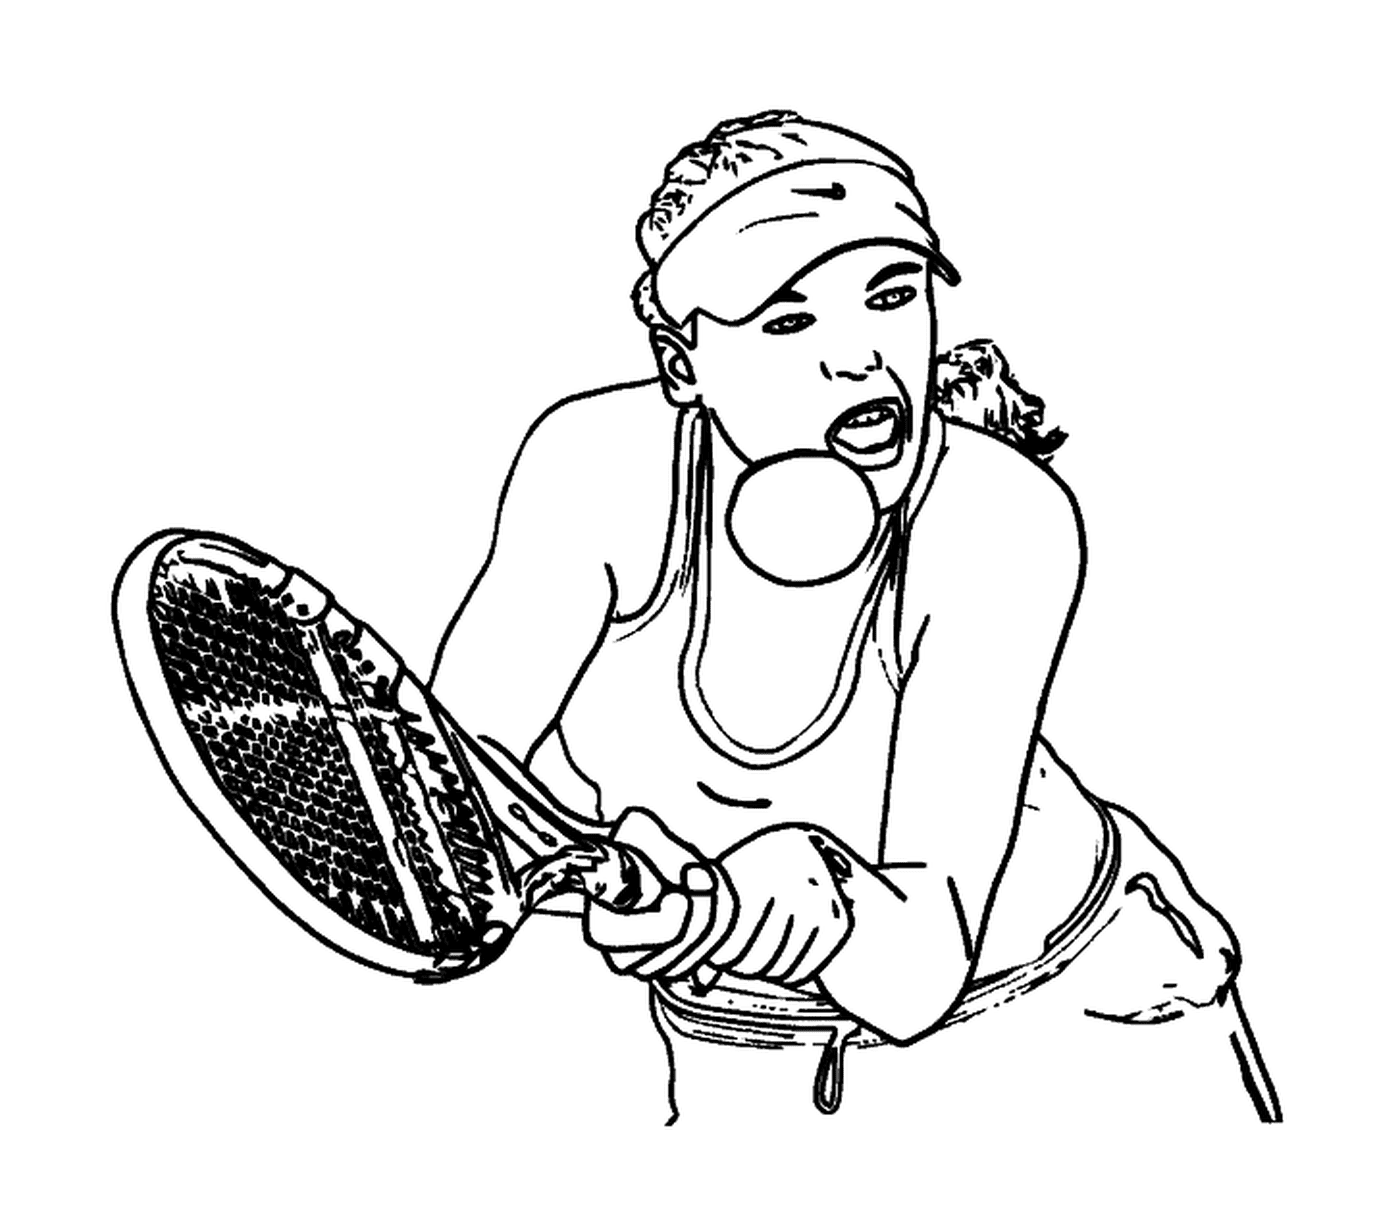 coloriage joueuse de tennis avec une visiere